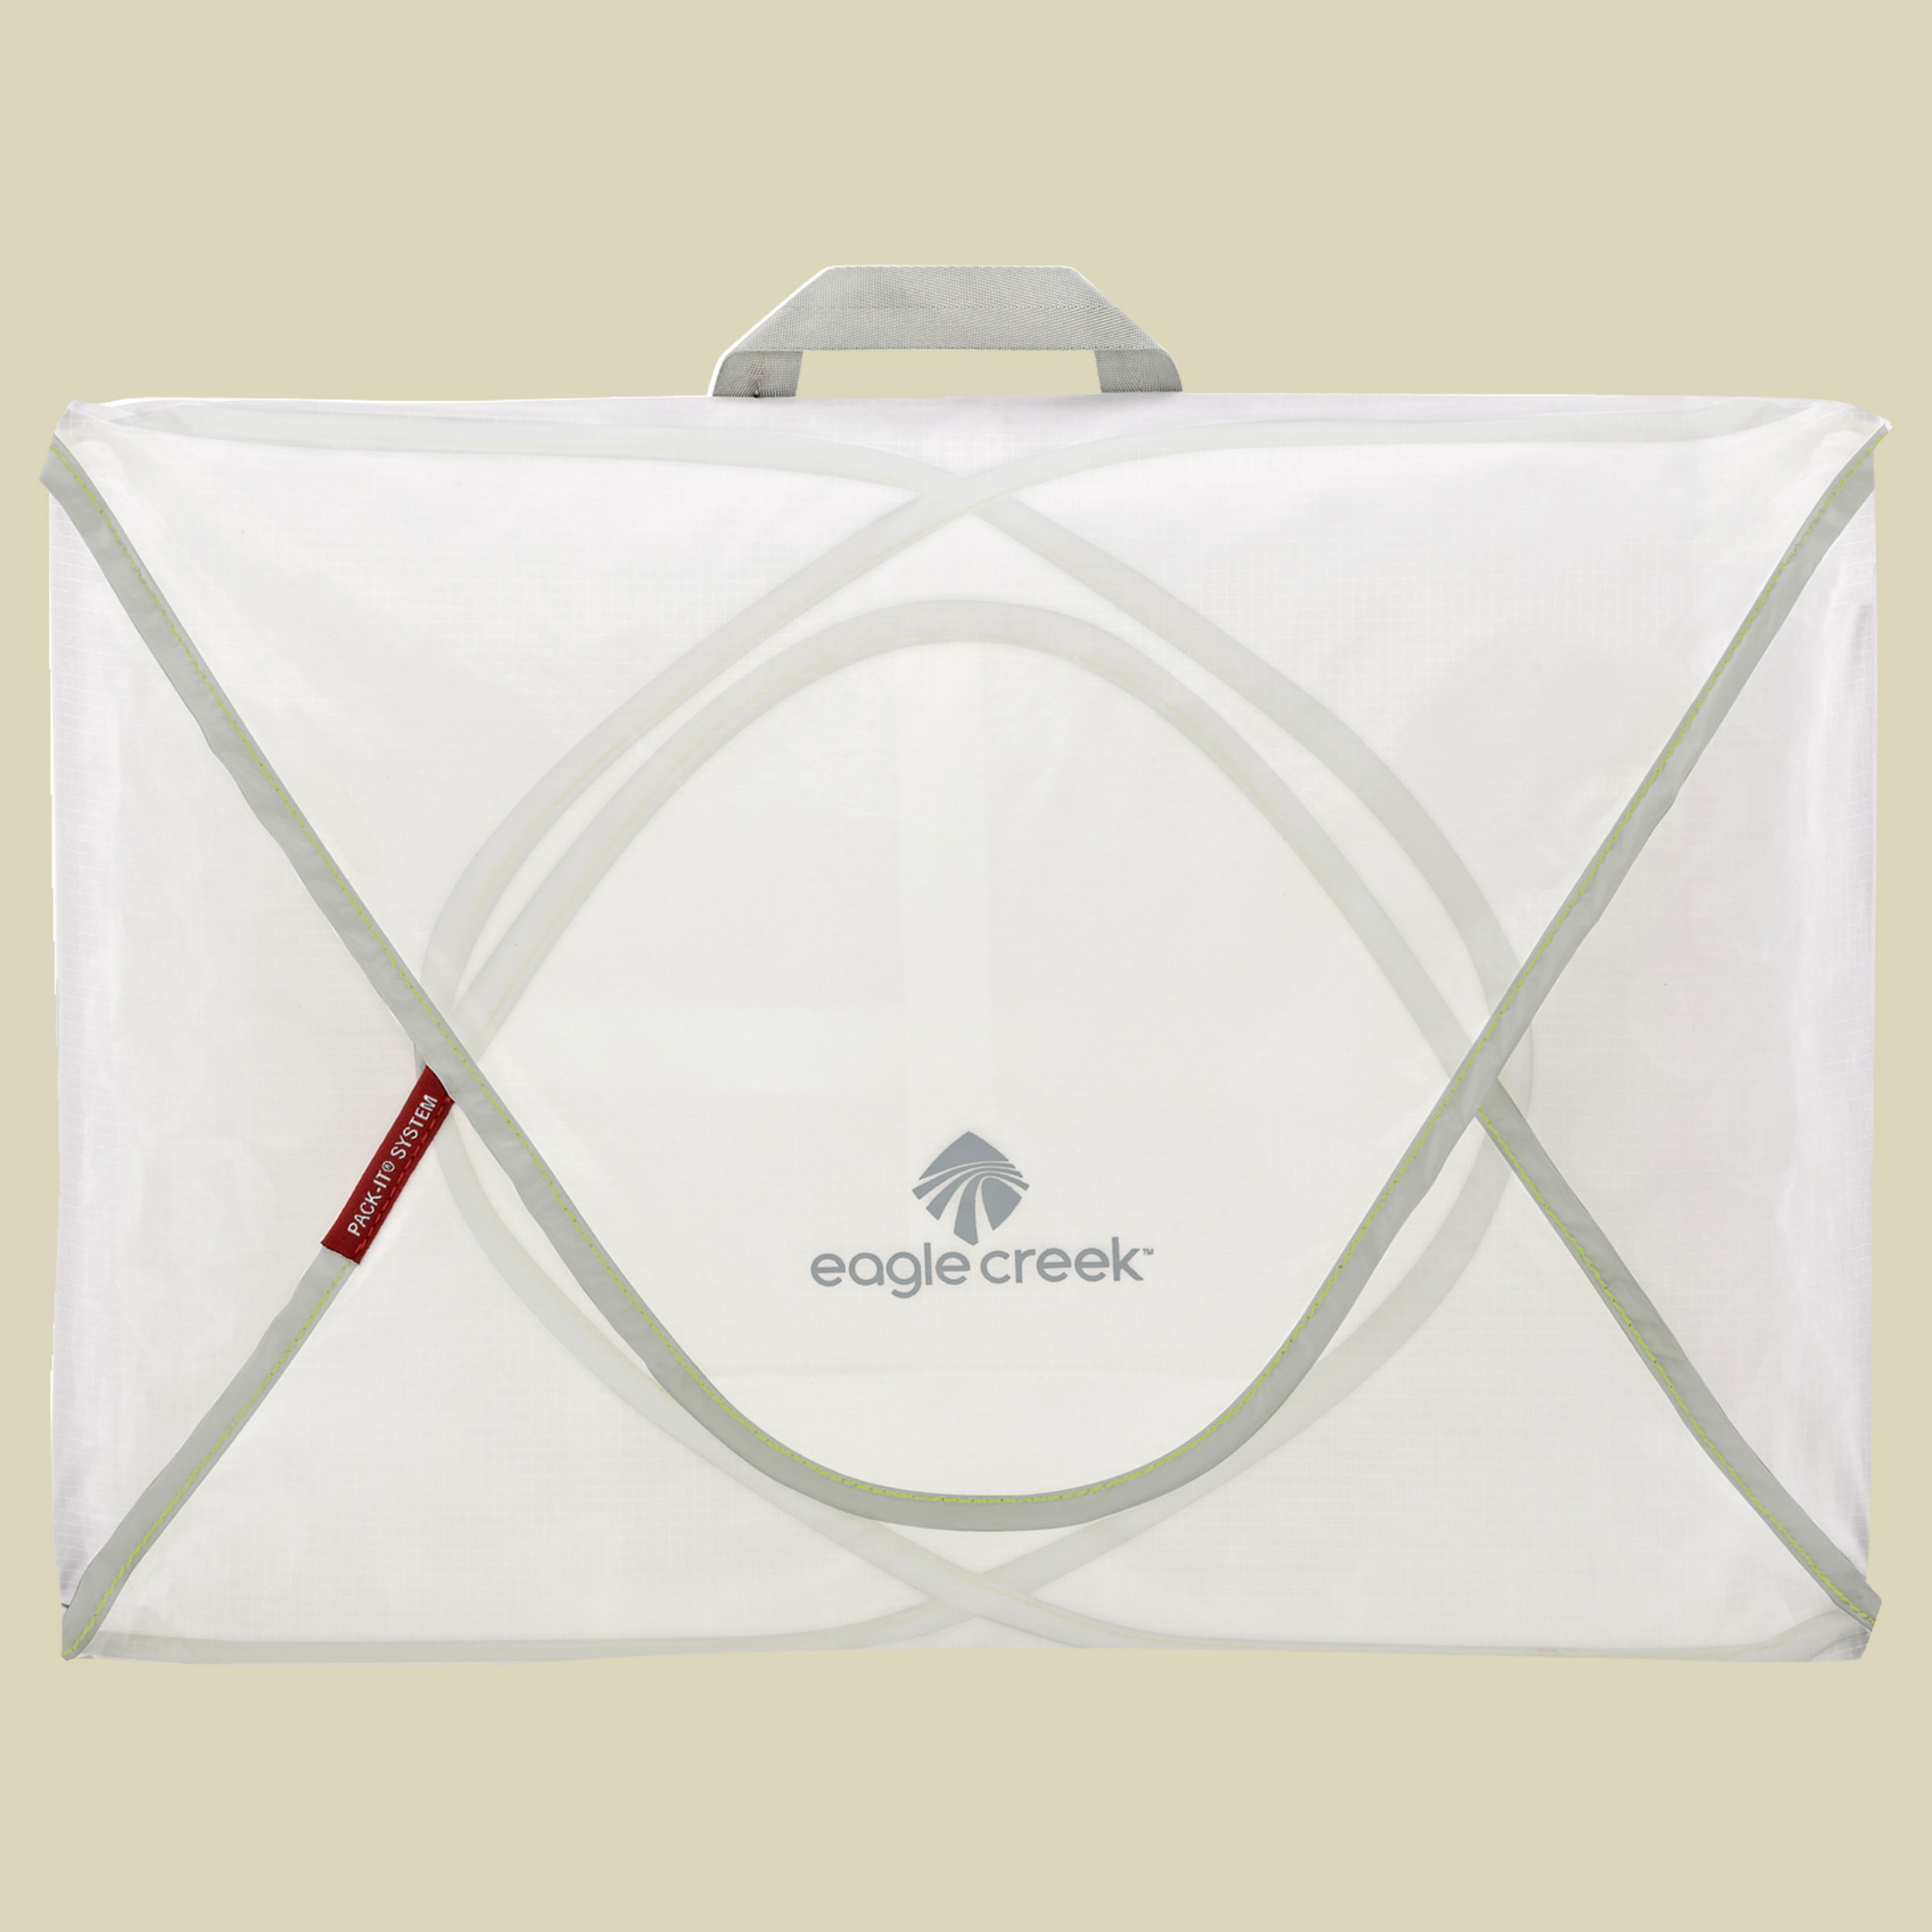 Pack-It Specter Garment Folder Größe medium Farbe white/strobe